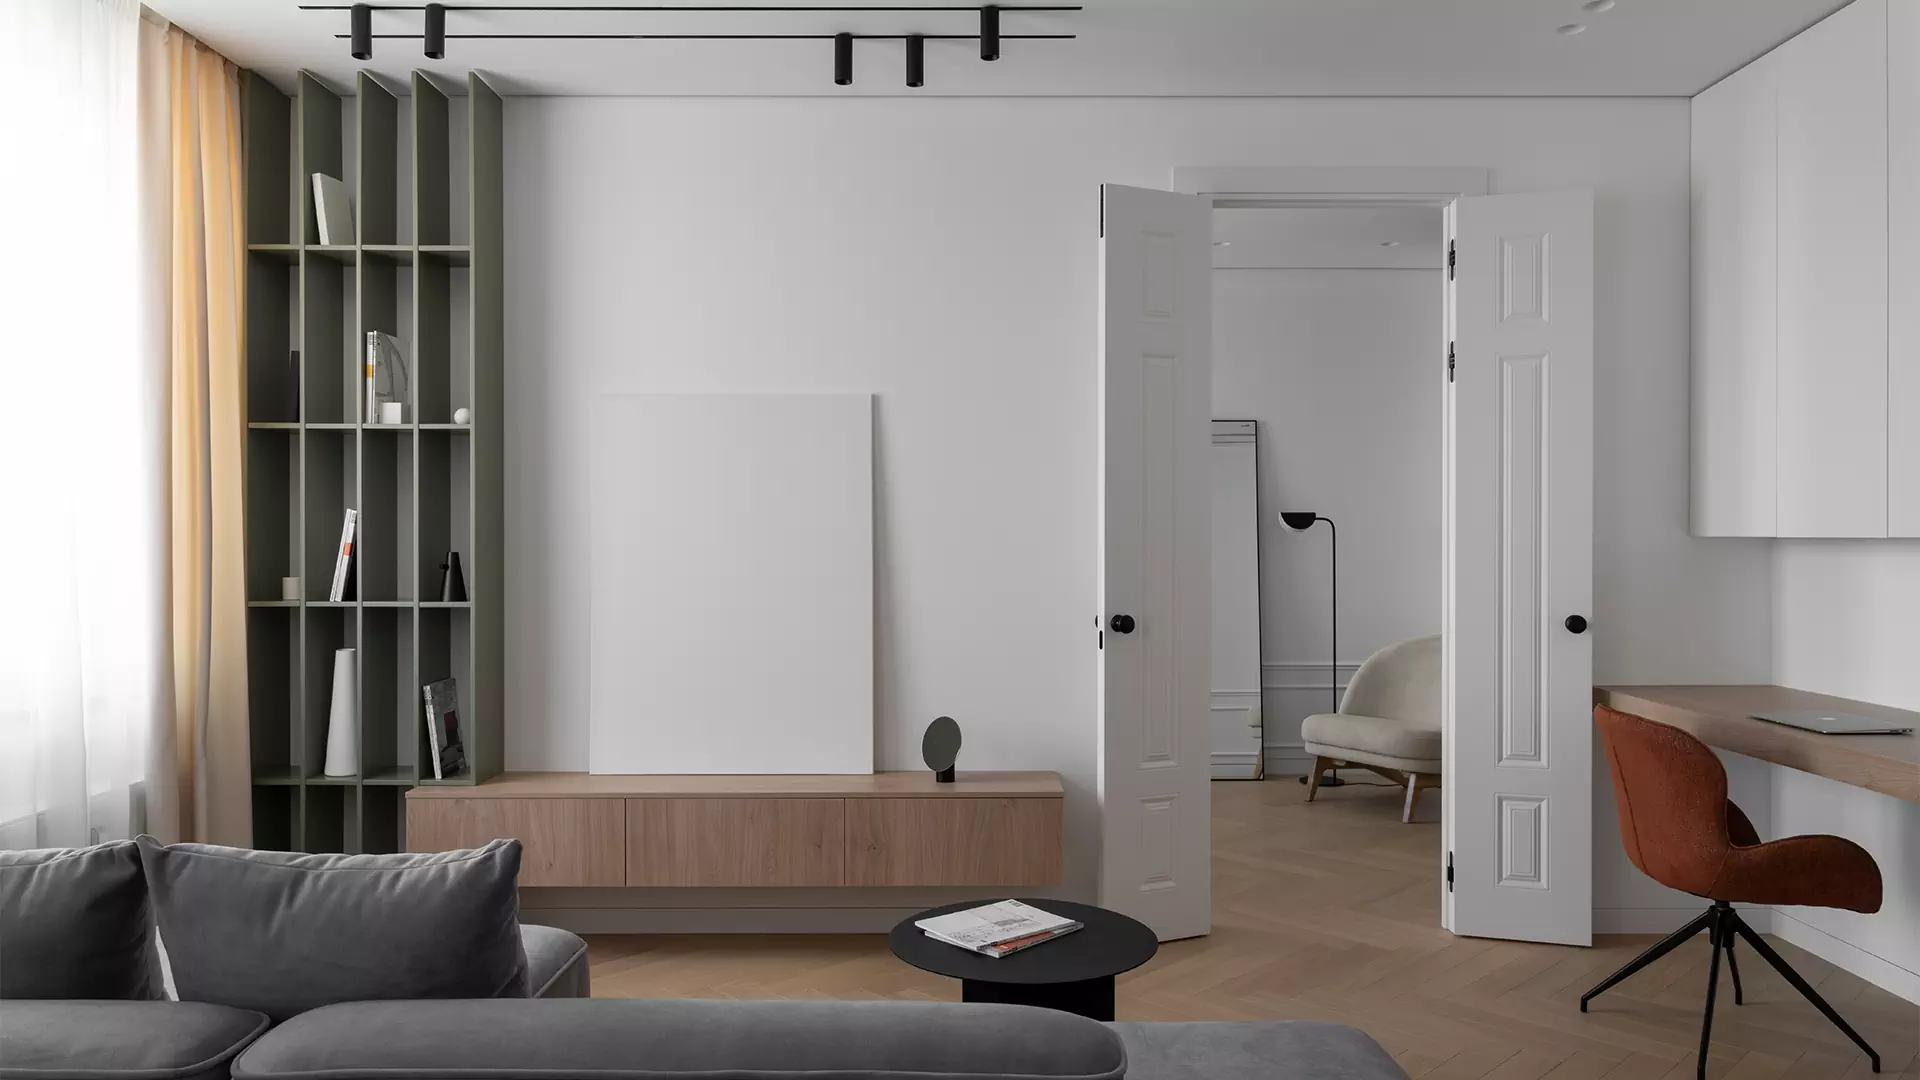 Сбалансированный микс классики и минимализма в интерьере небольшой квартиры — проект Бюро 48